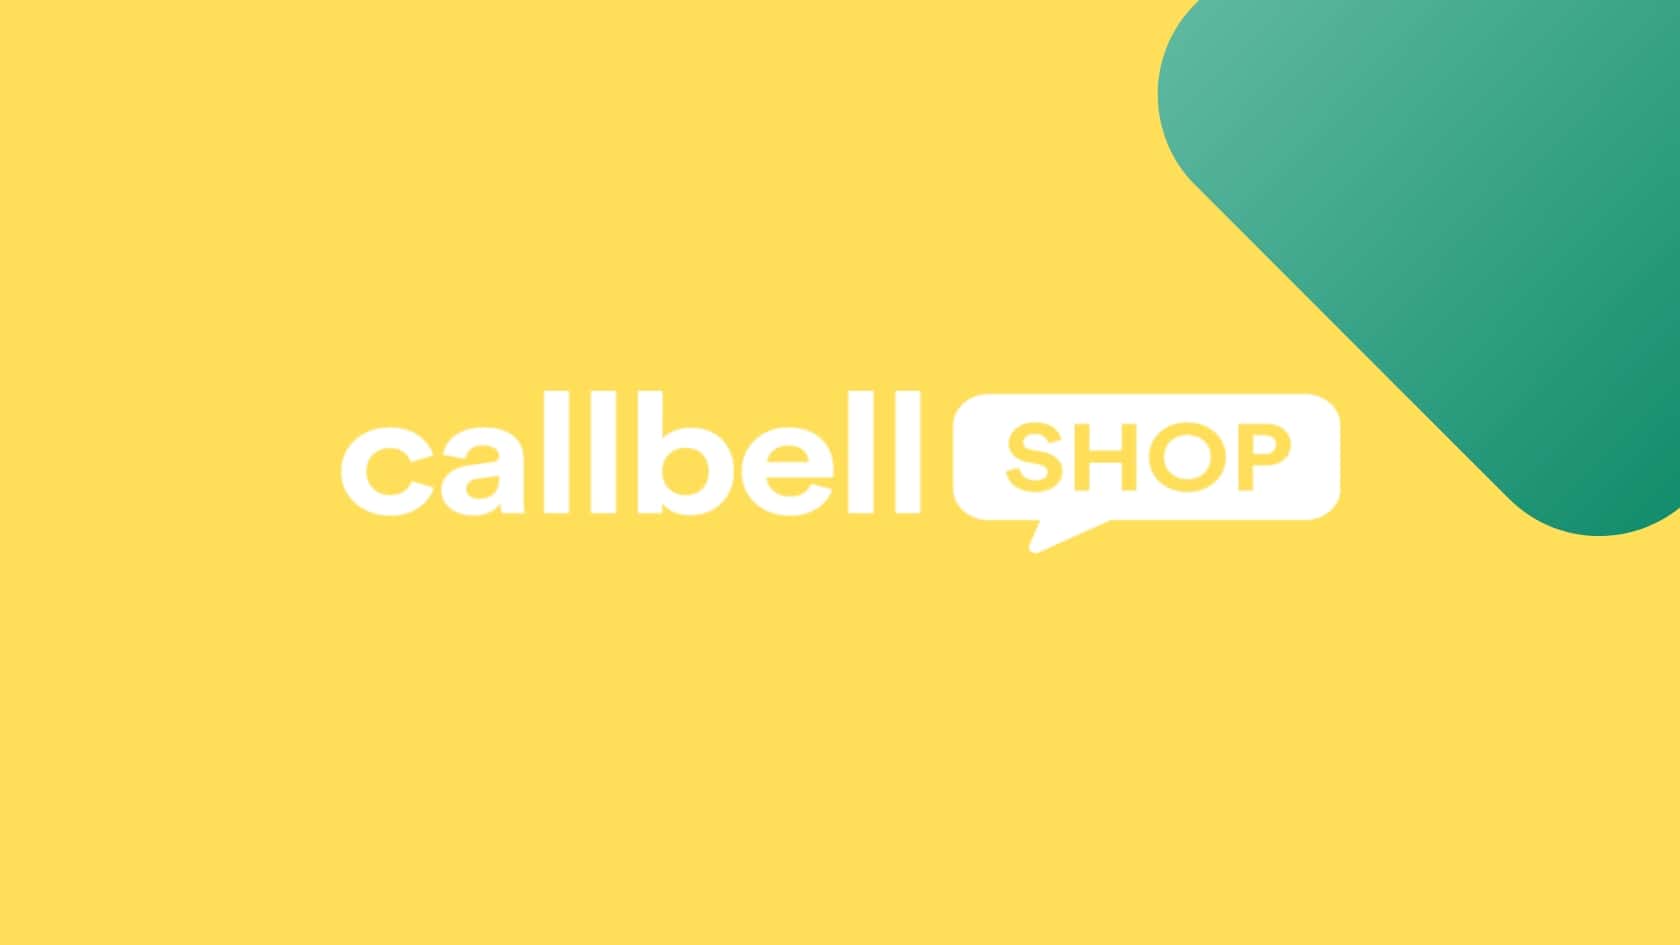 Otimize o processo de compra da sua loja virtual com a Callbell Shop